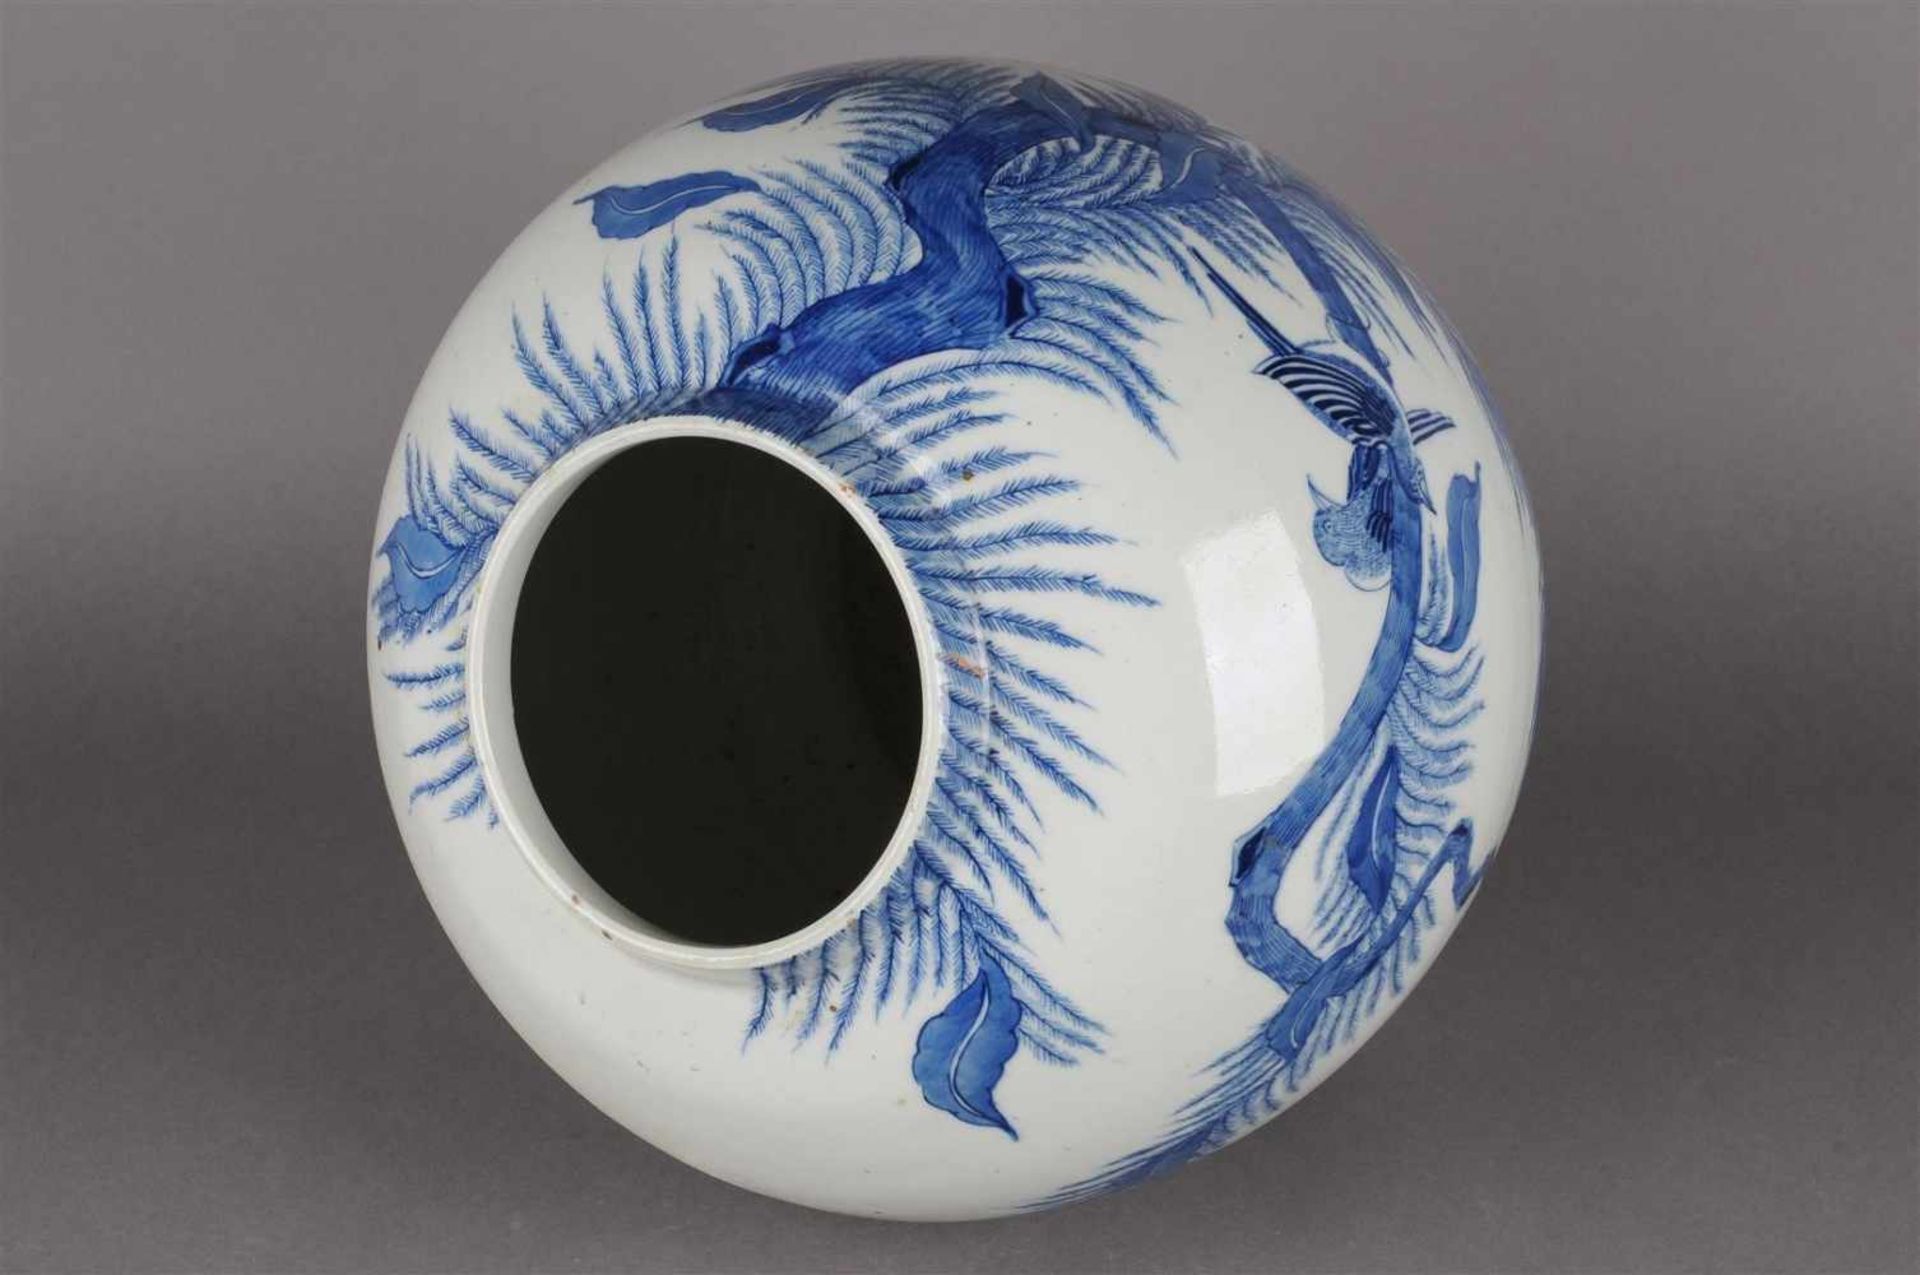 Blauw wit porseleinen vaas met decor van bloemen en vogels, niet gemerkt, China 20e eeuw. H: 25 cm. - Bild 5 aus 6